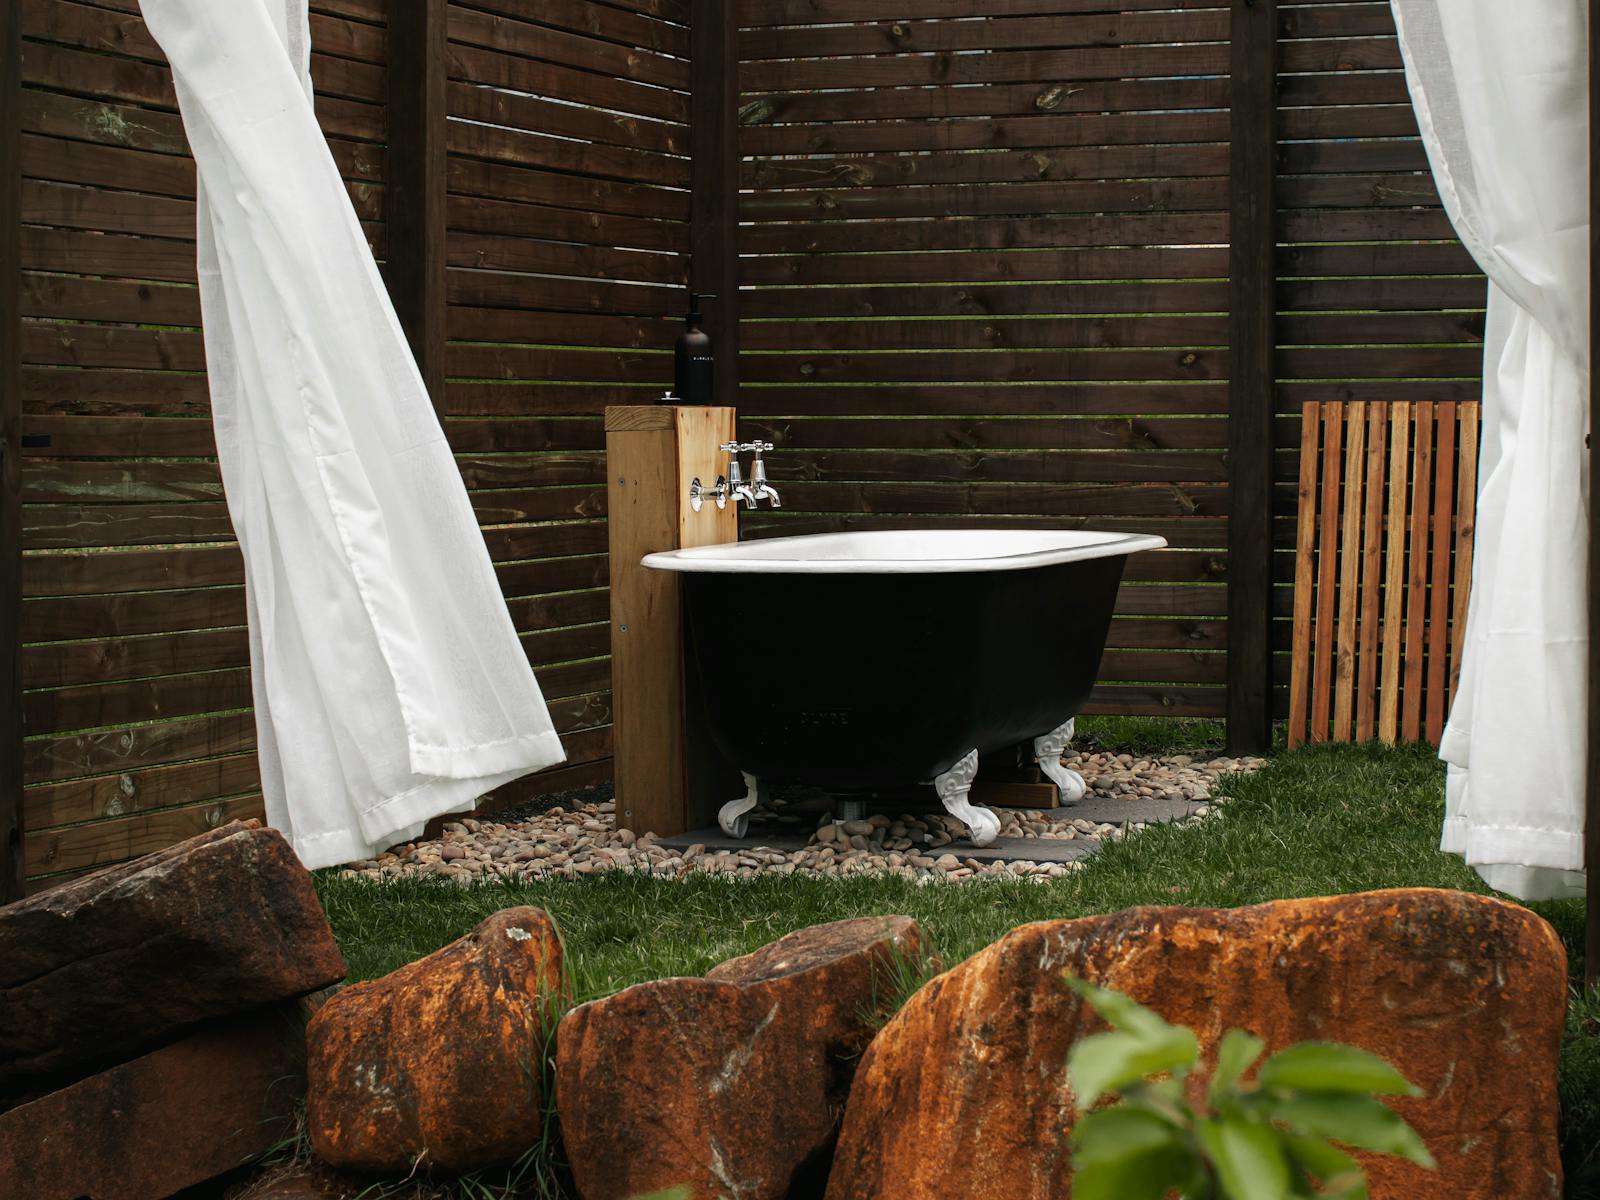 Antique clawfoot bath in our open air bath house